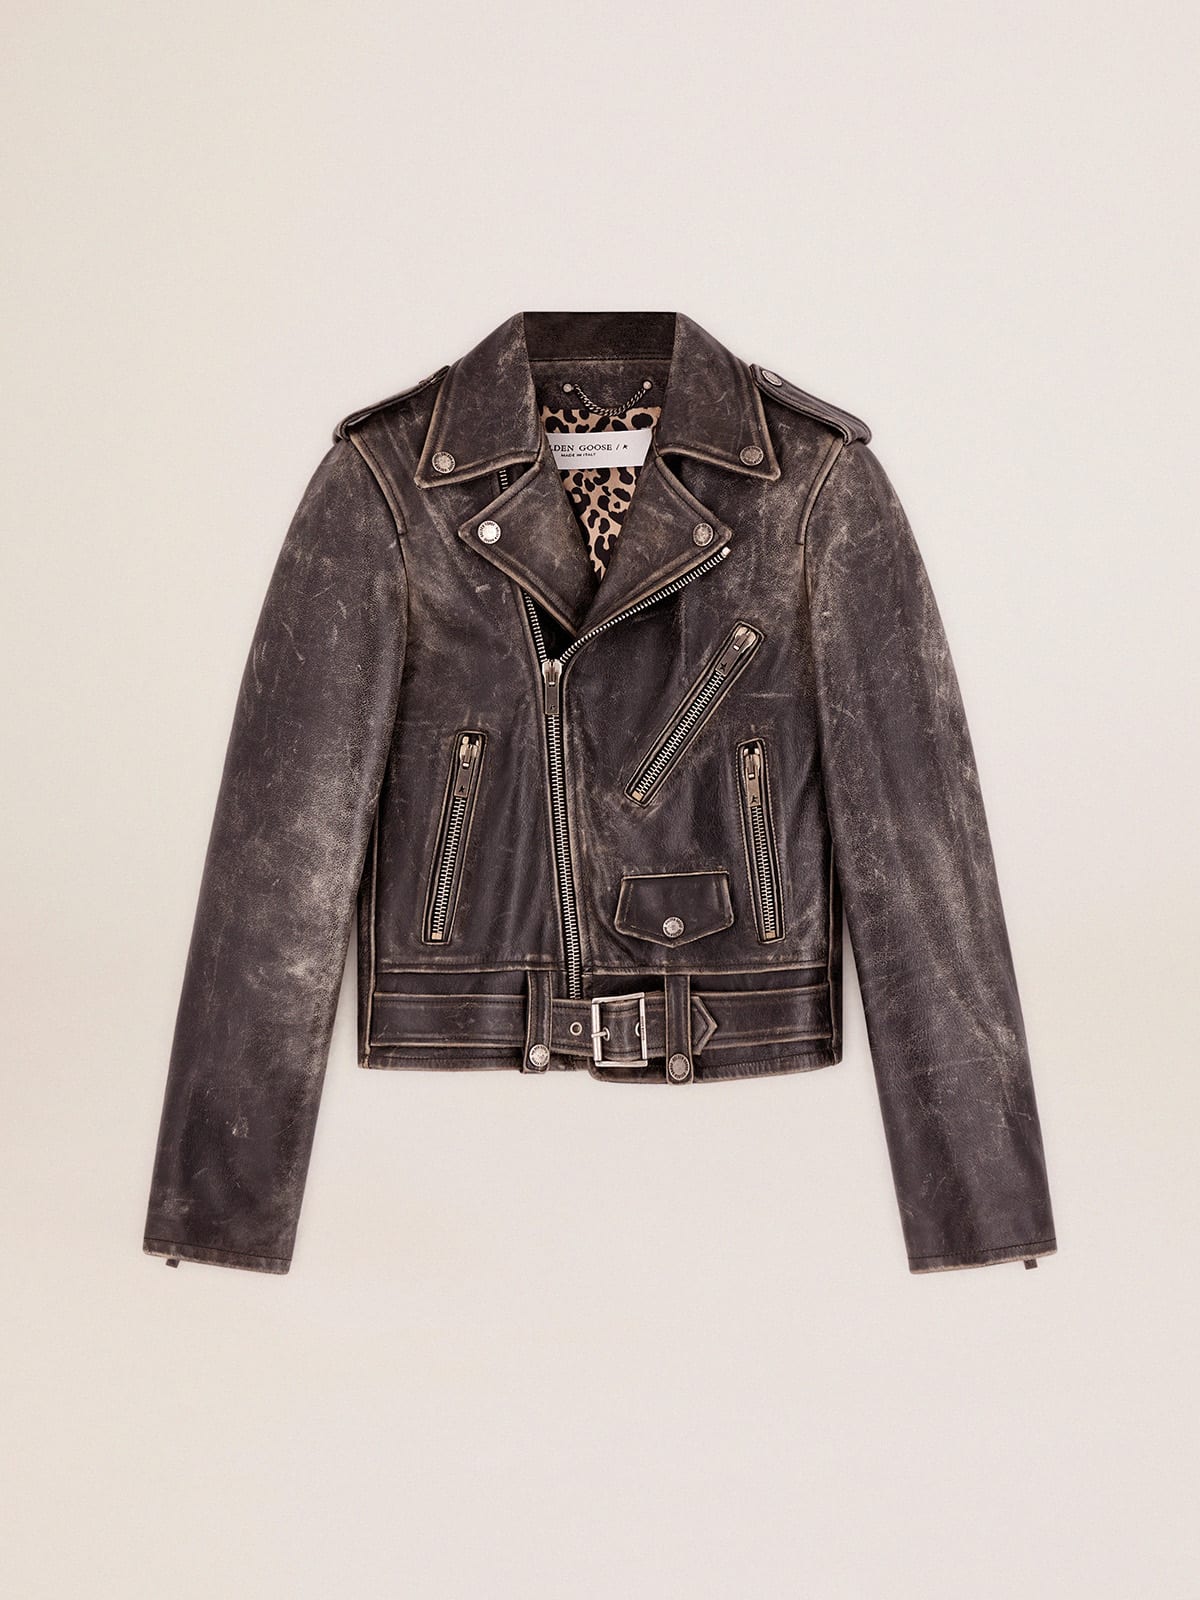 Women's biker jacket in distressed leather